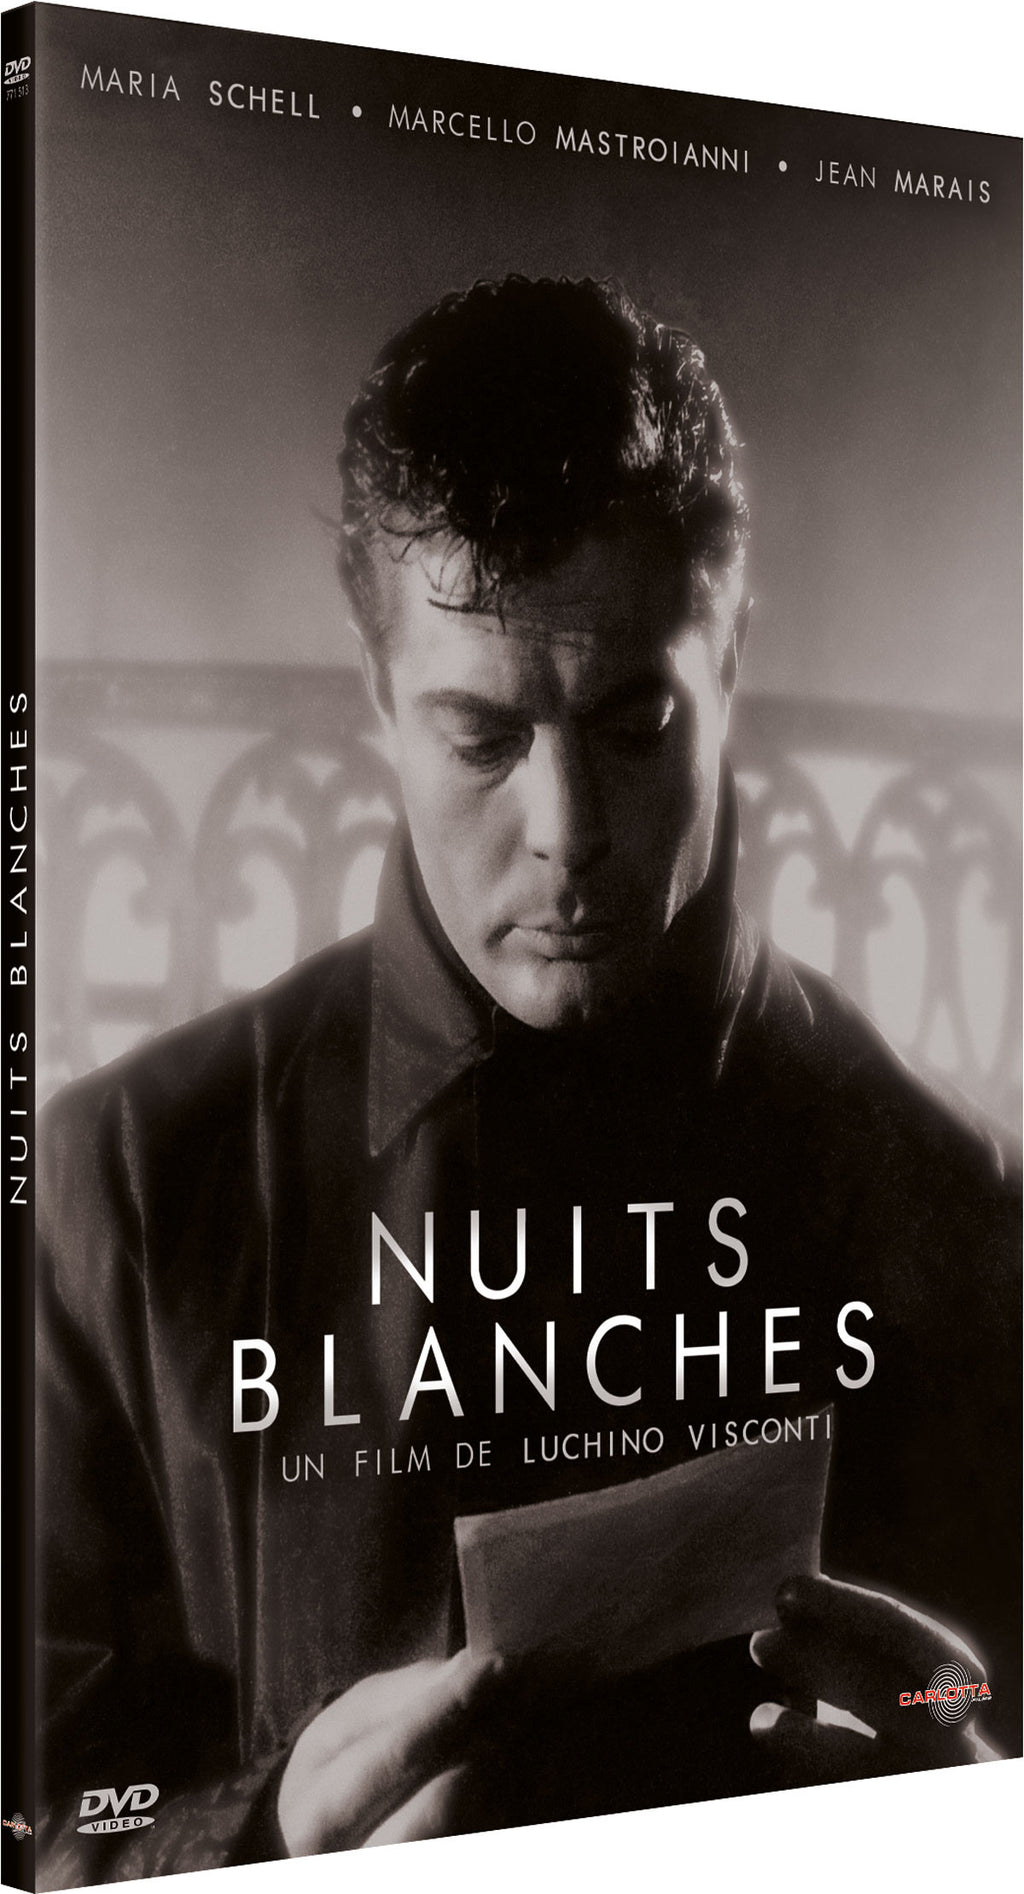 Nuits blanches de Luchino Visconti - DVD - CARLOTTA FILMS - La Boutique